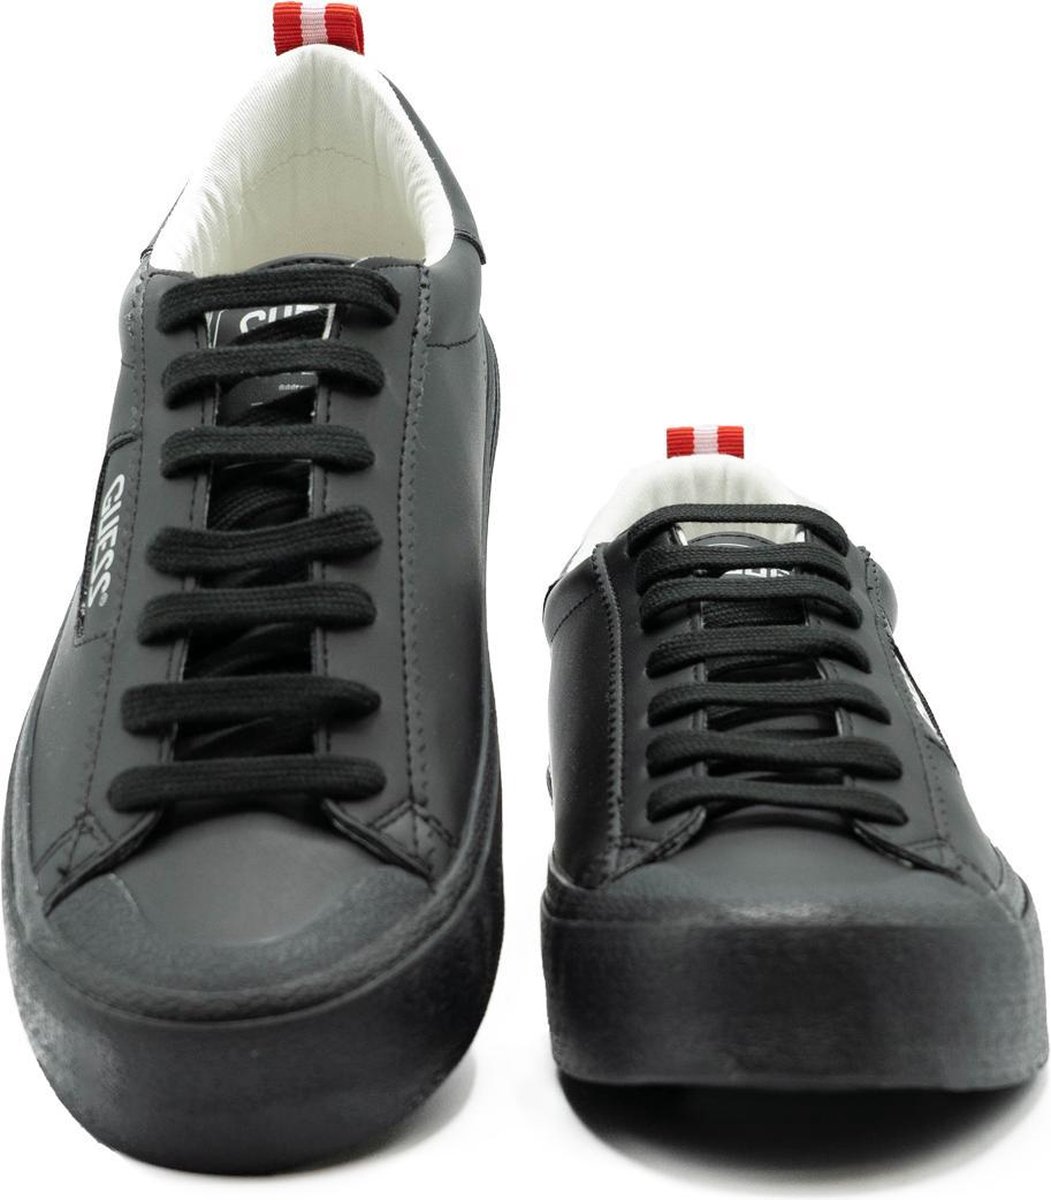 Rang Oude man Over het algemeen GUESS Mima Smart - Maat 45 - Dames Sneakers - Zwart | DGM Outlet